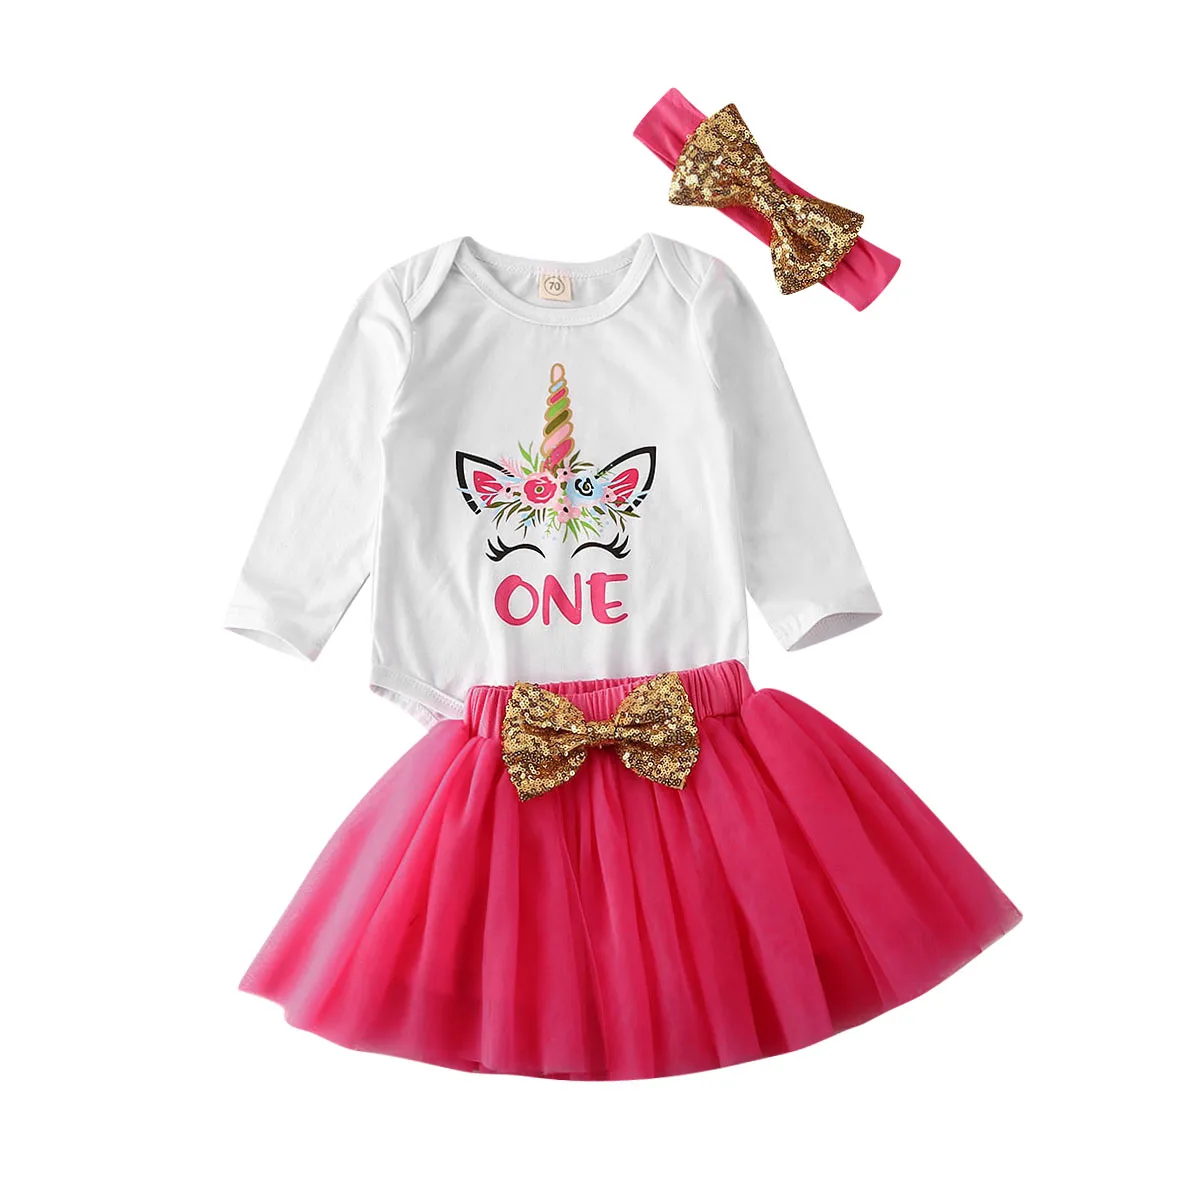 Г. Летняя одежда для малышей комплект одежды из 3 предметов для новорожденных девочек с единорогом, комбинезон с короткими рукавами+ юбка-пачка+ повязка на голову с блестками - Цвет: Rose Red Long Sleeve